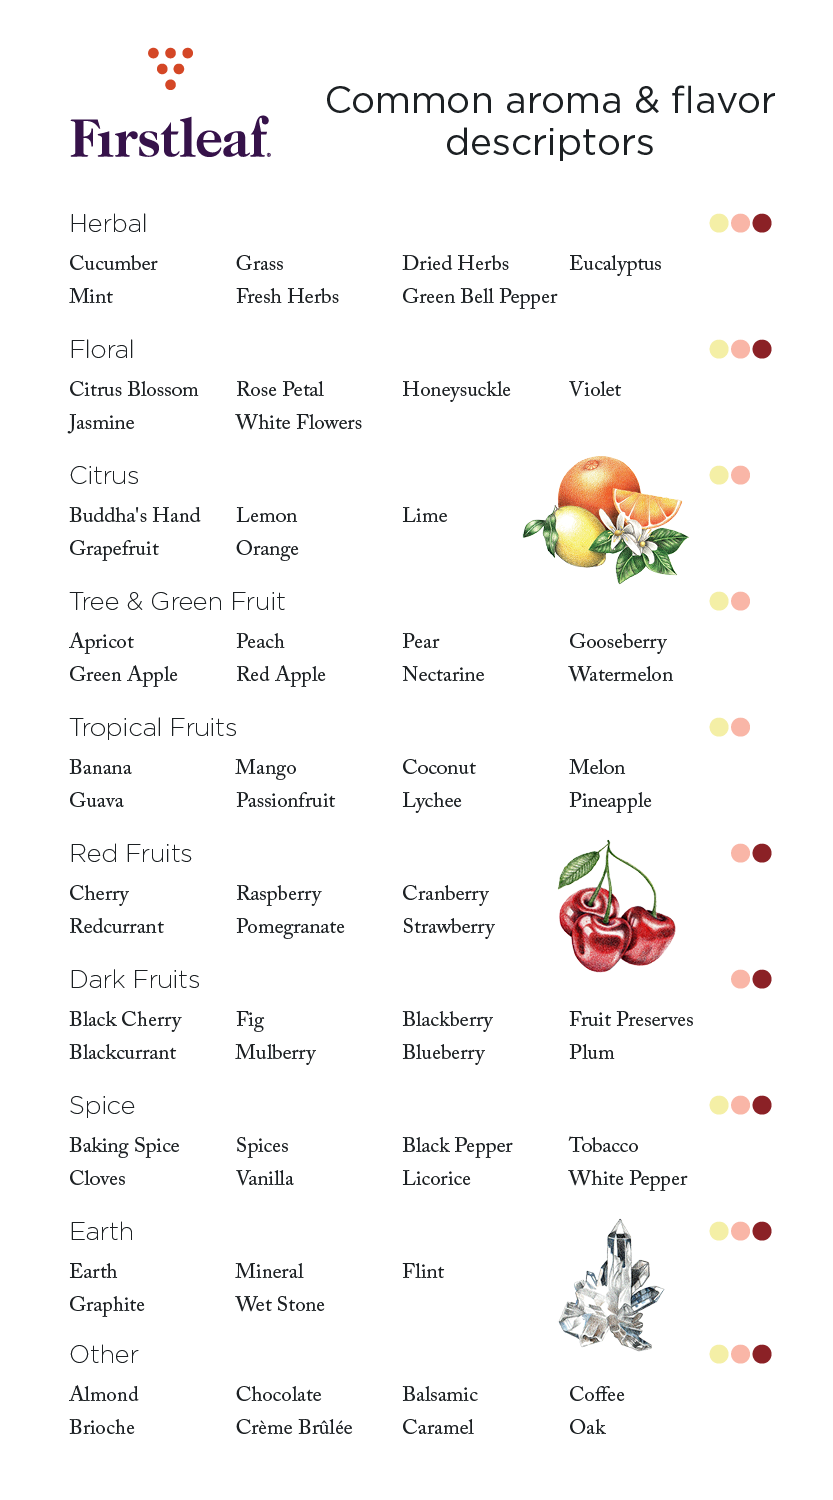 Common Aroma and Flavor Descriptors